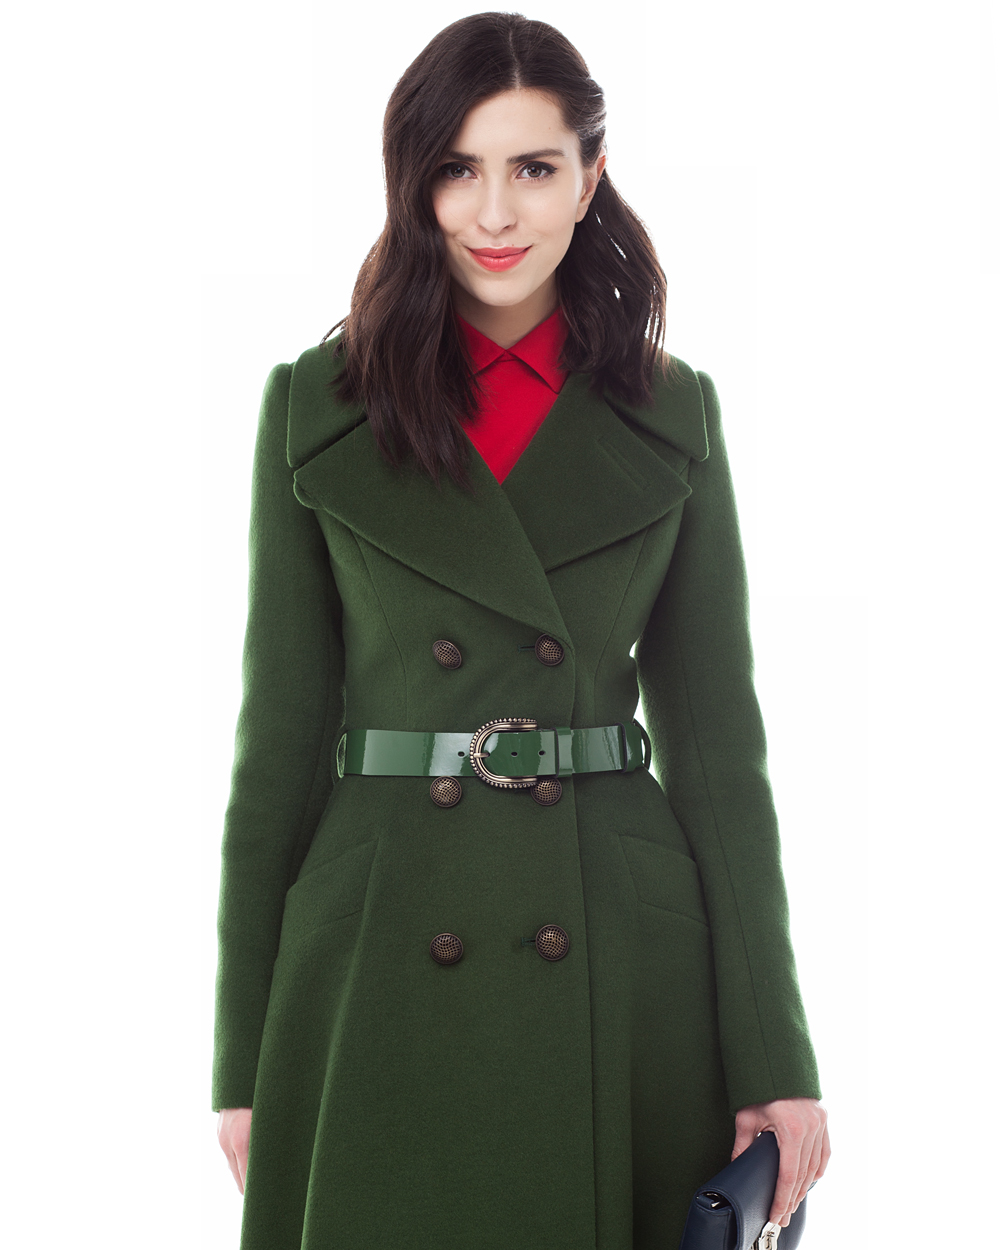 Зеленое пальто купить. Изумрудное пальто pompa. Пальто приталенное зеленое ADL. Пальто зеленое женское Chaurel. Темно зеленое пальто женское.